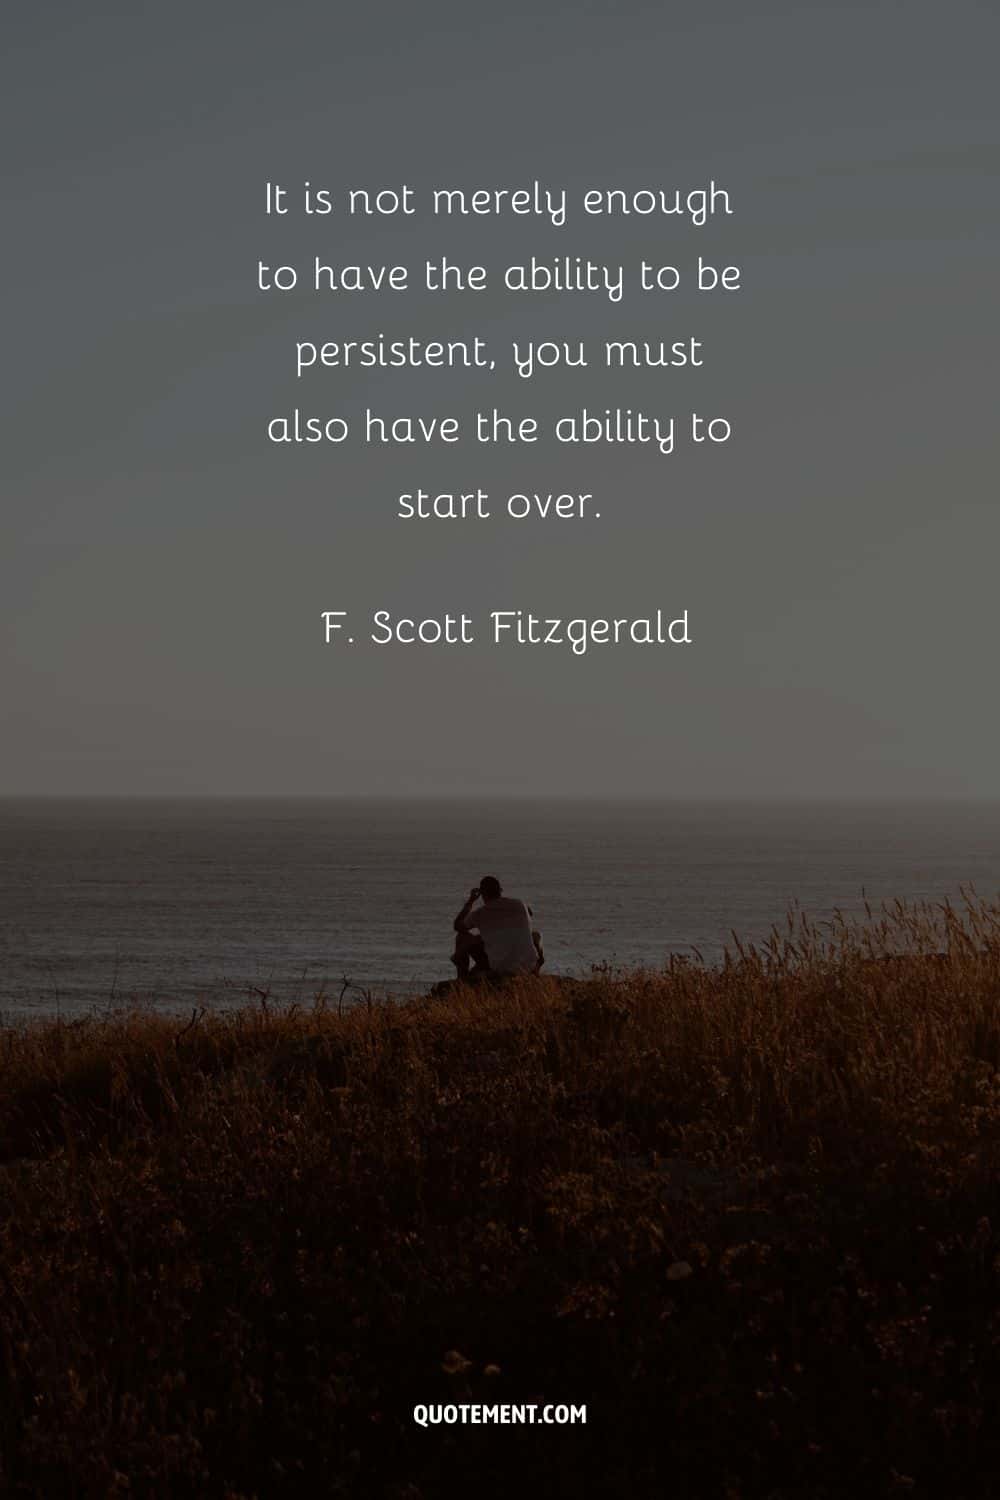 "No basta con tener la capacidad de ser persistente, también hay que tener la capacidad de volver a empezar". - F. Scott Fitzgerald